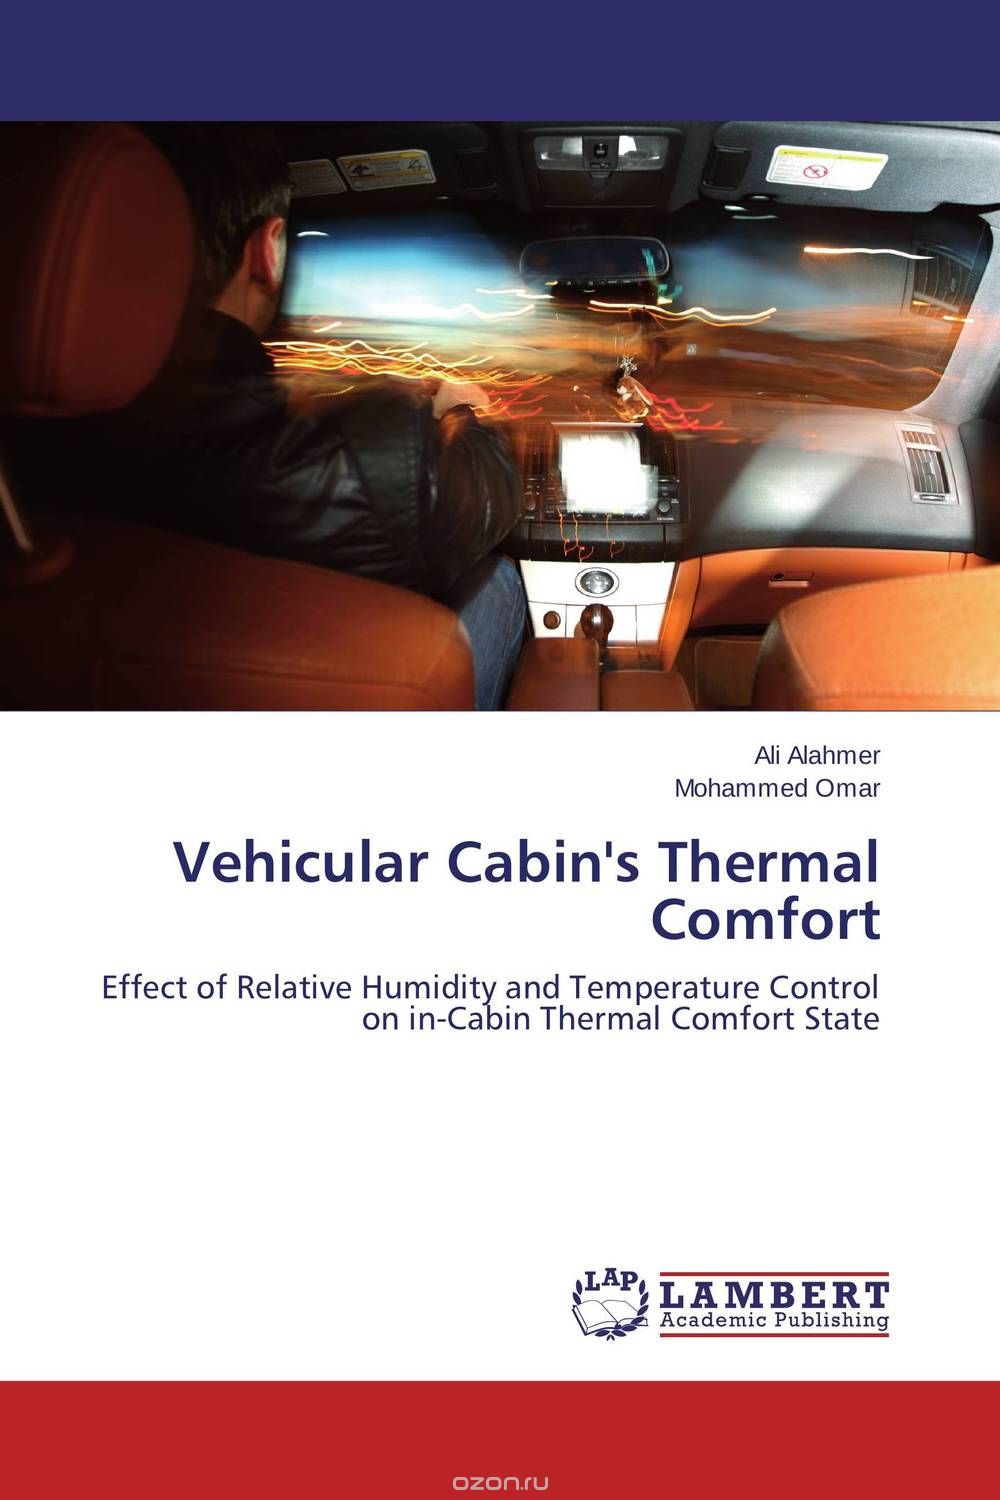 Скачать книгу "Vehicular Cabin's Thermal Comfort"